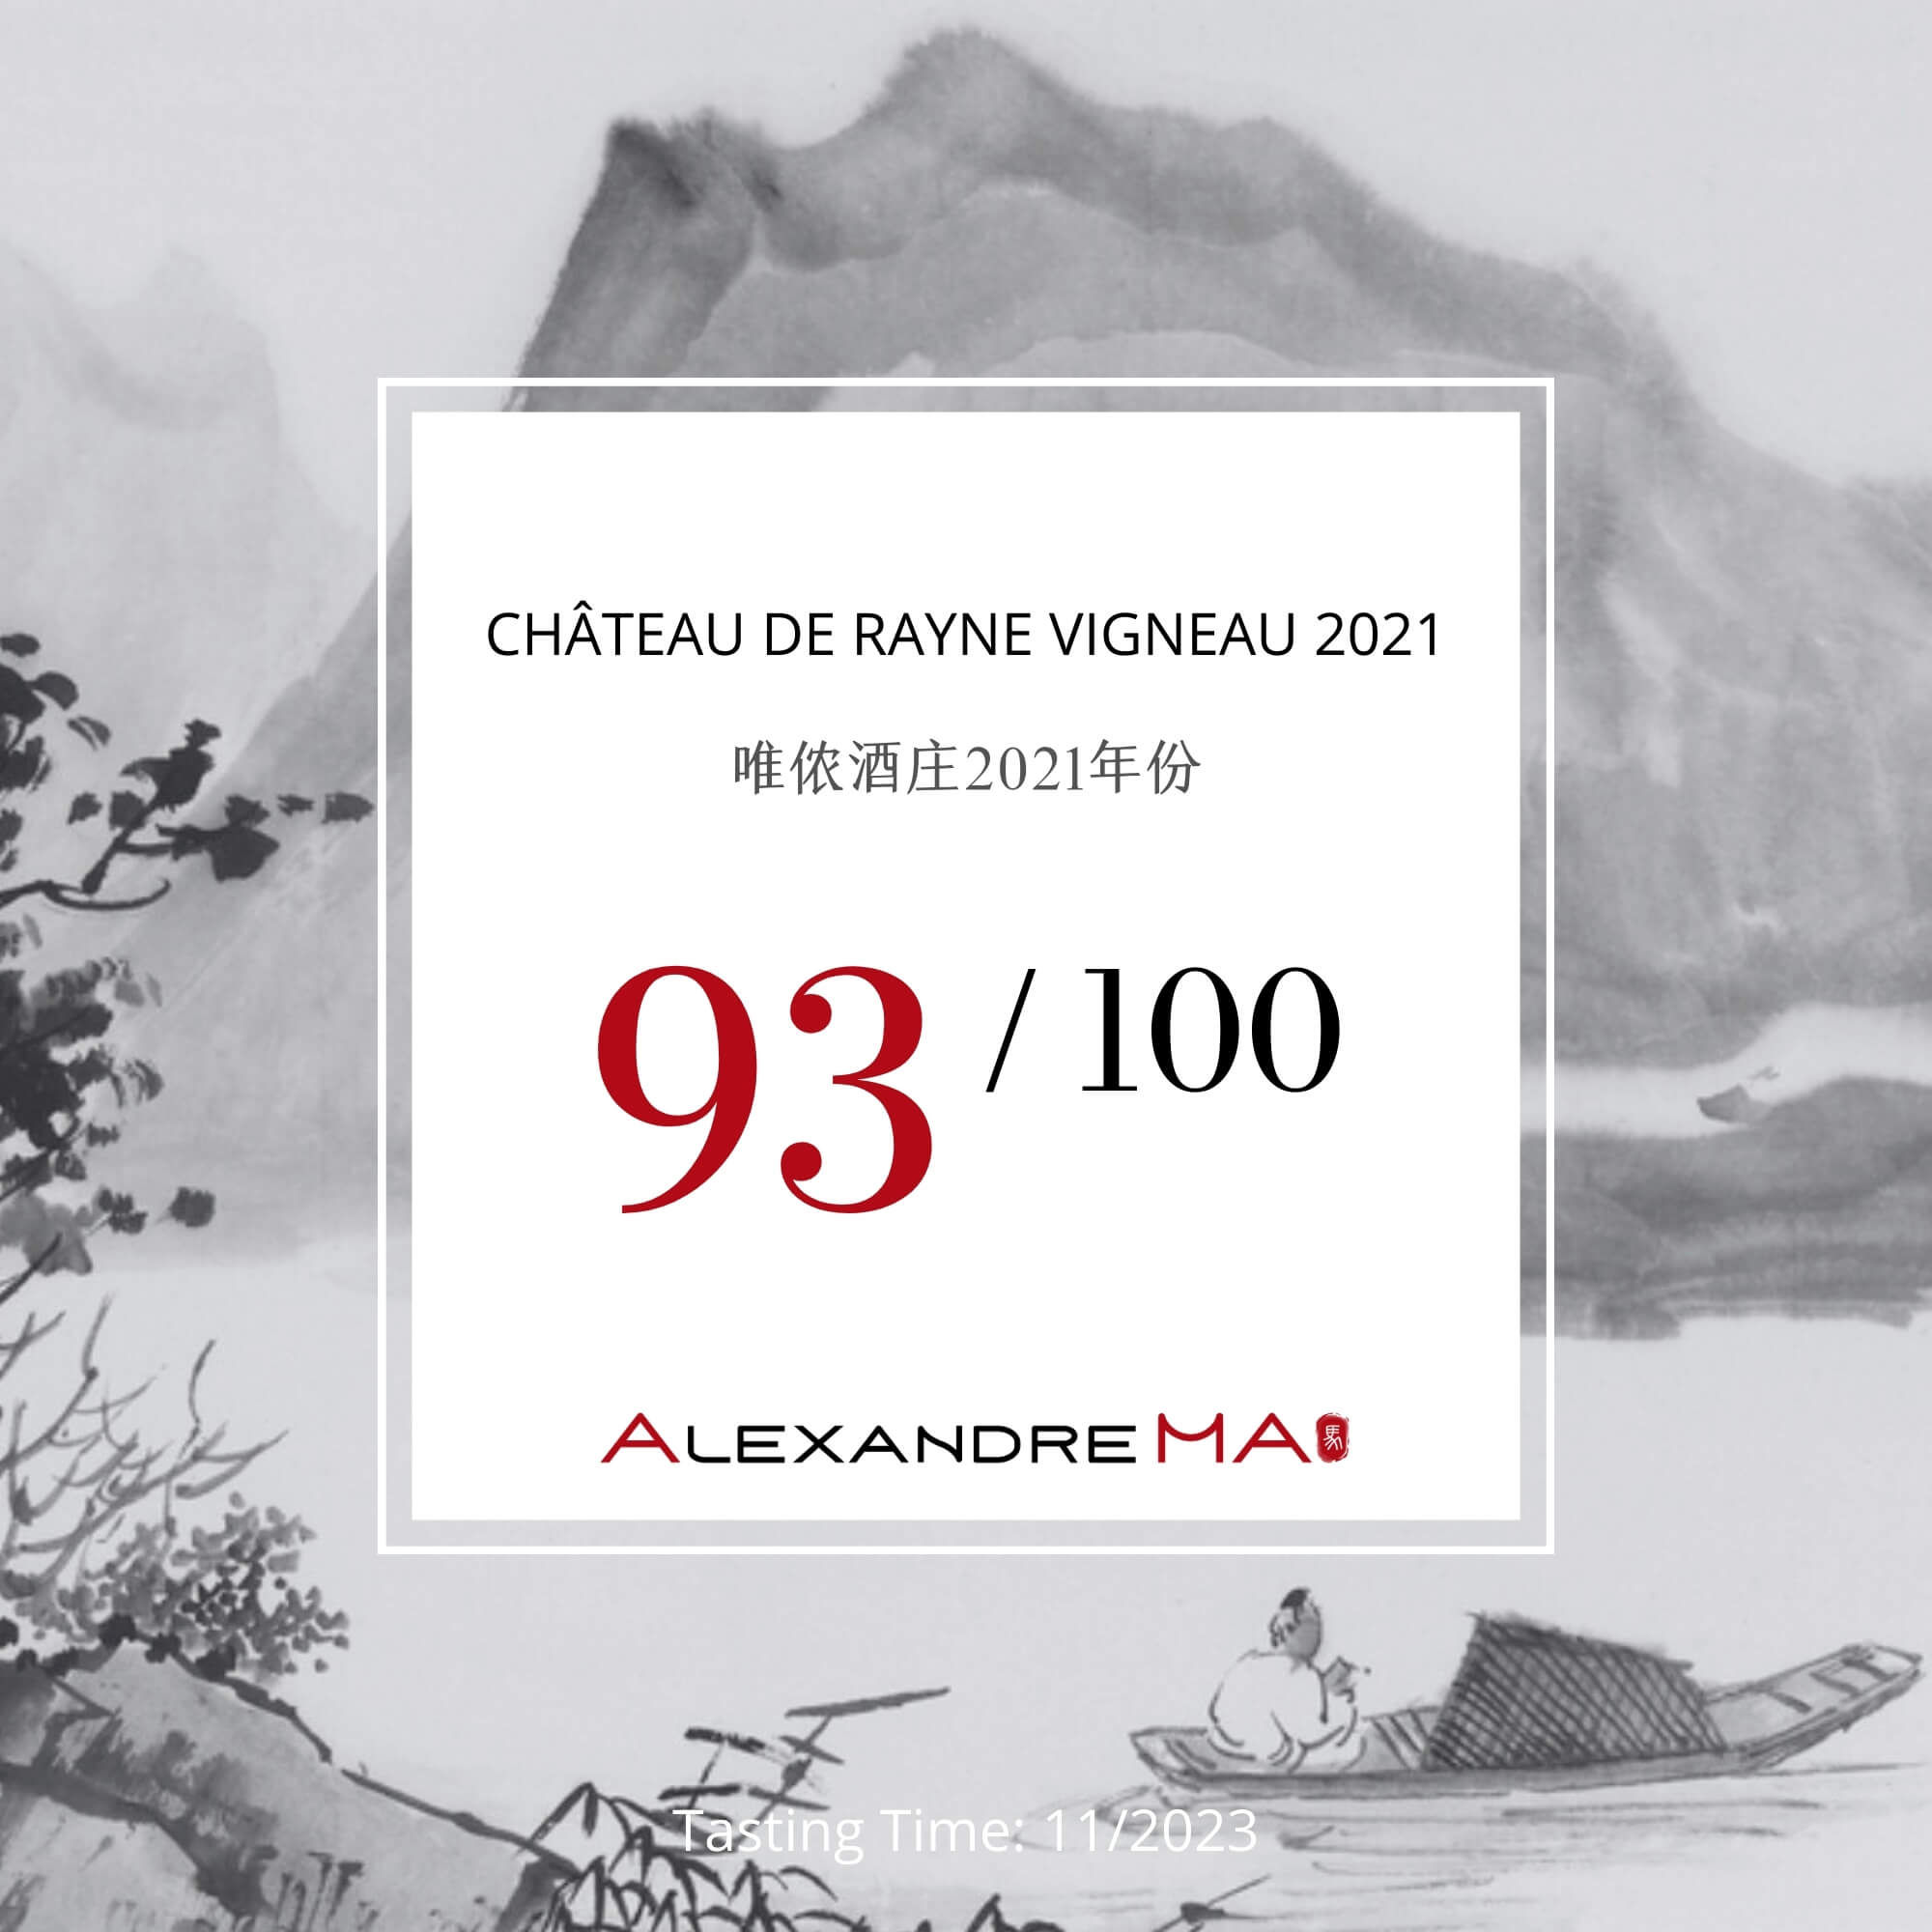 Château de Rayne Vigneau 2021 唯侬酒庄 - Alexandre Ma